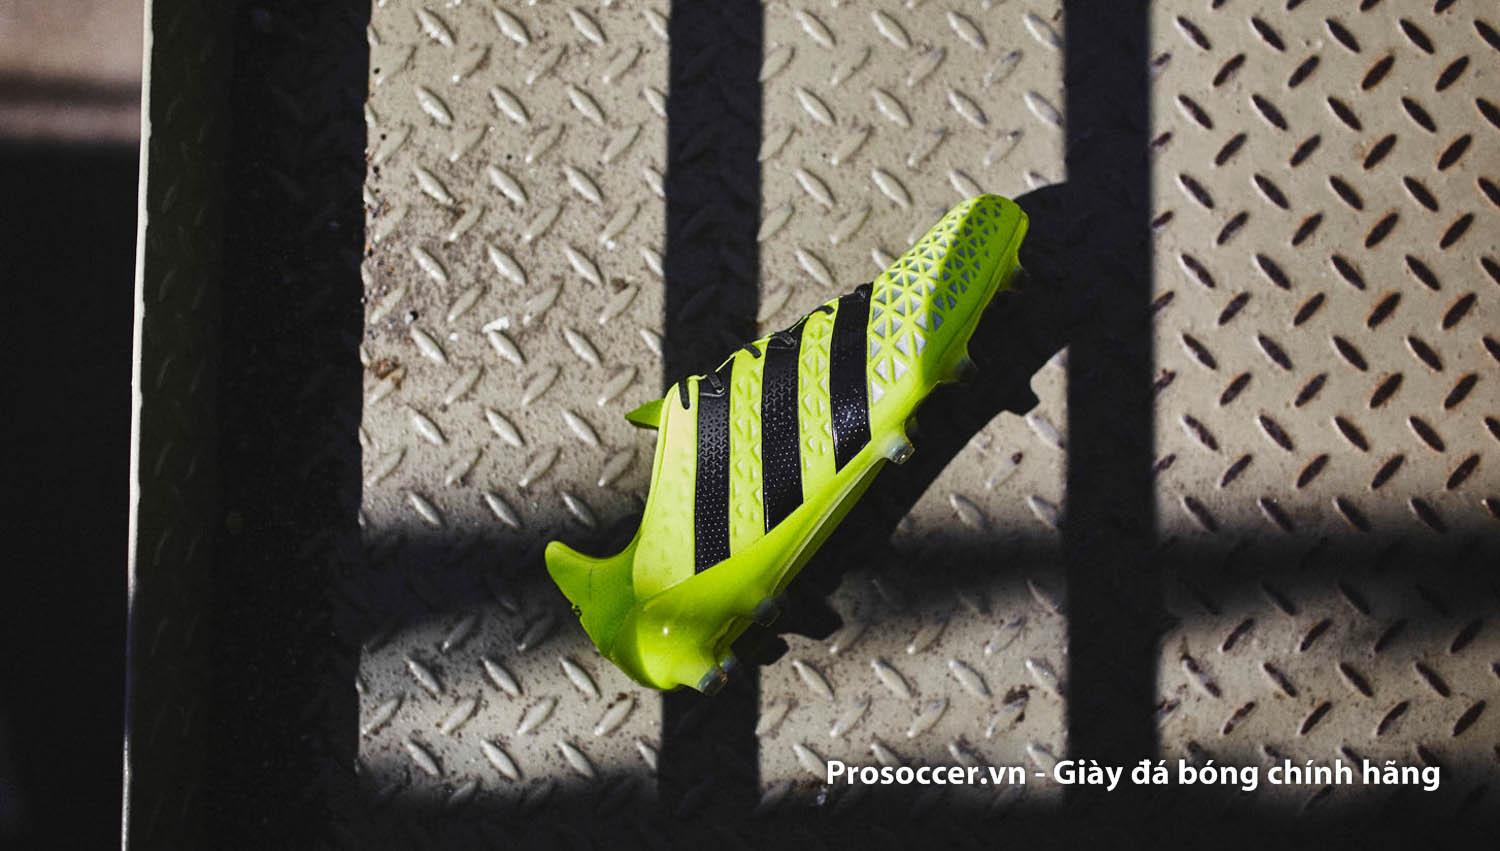 Adidas là thương hiệu giày đá bóng chính hãng rất được ưa chuộng tại Việt Nam